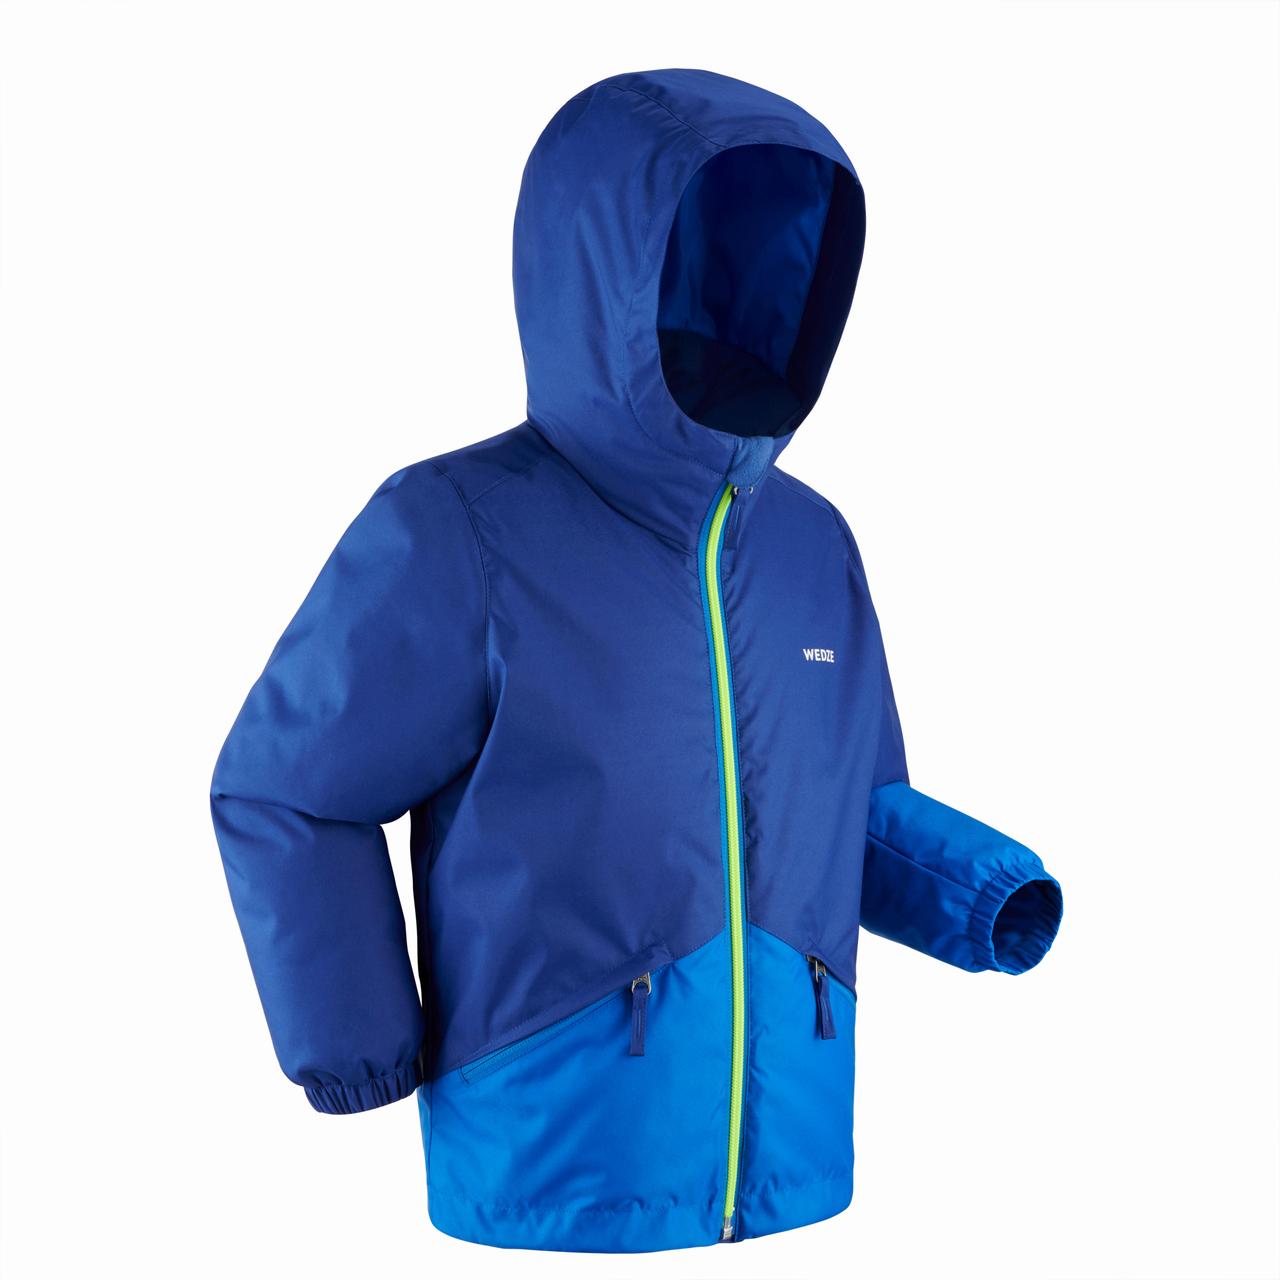 Куртка дитяча 100 для лижного спорту синя - 4 роки 98-104 см